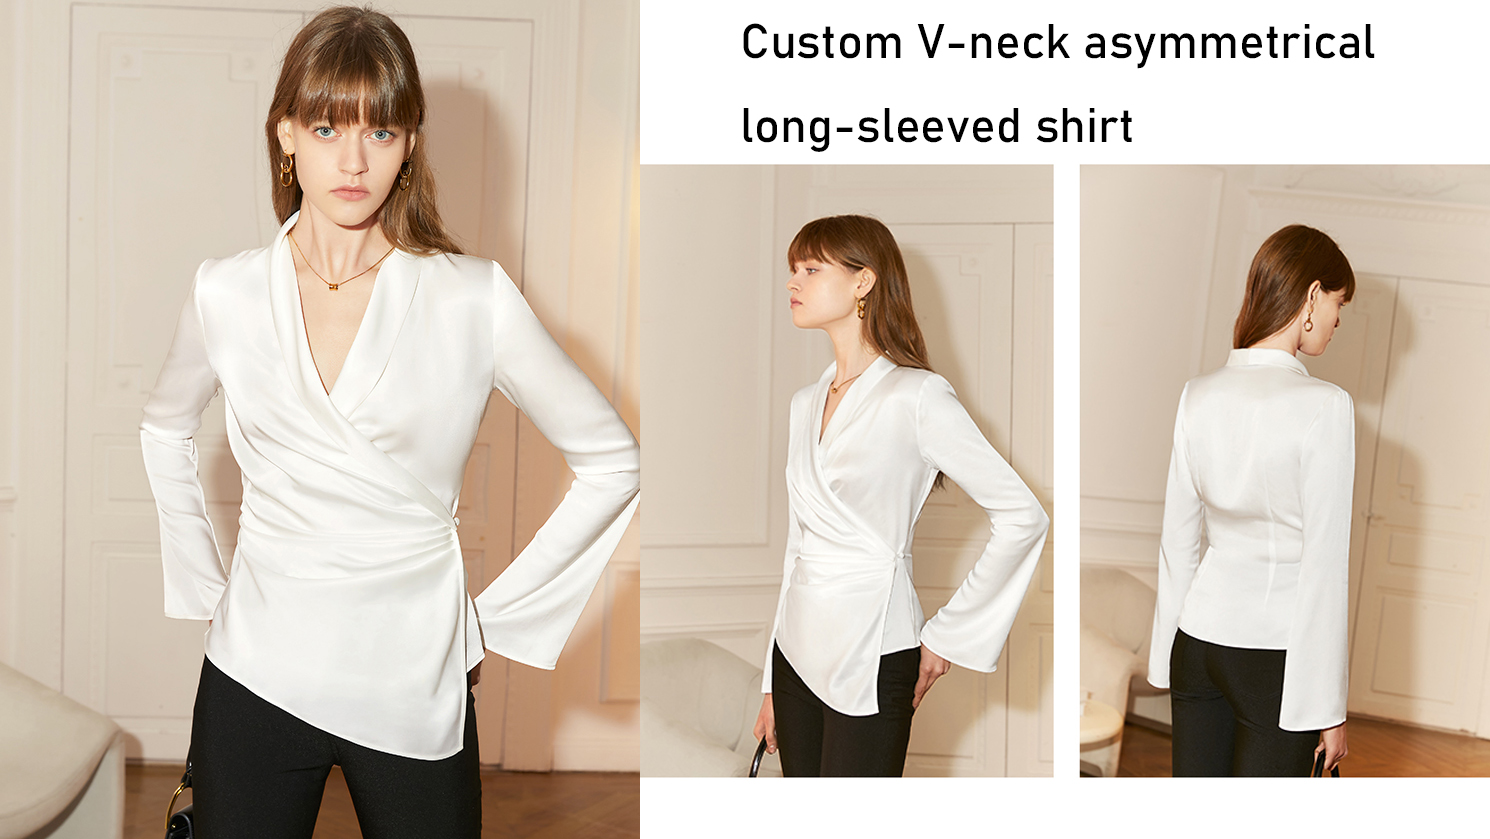 Custom V-neck asymmetrical long-sleeved shirt